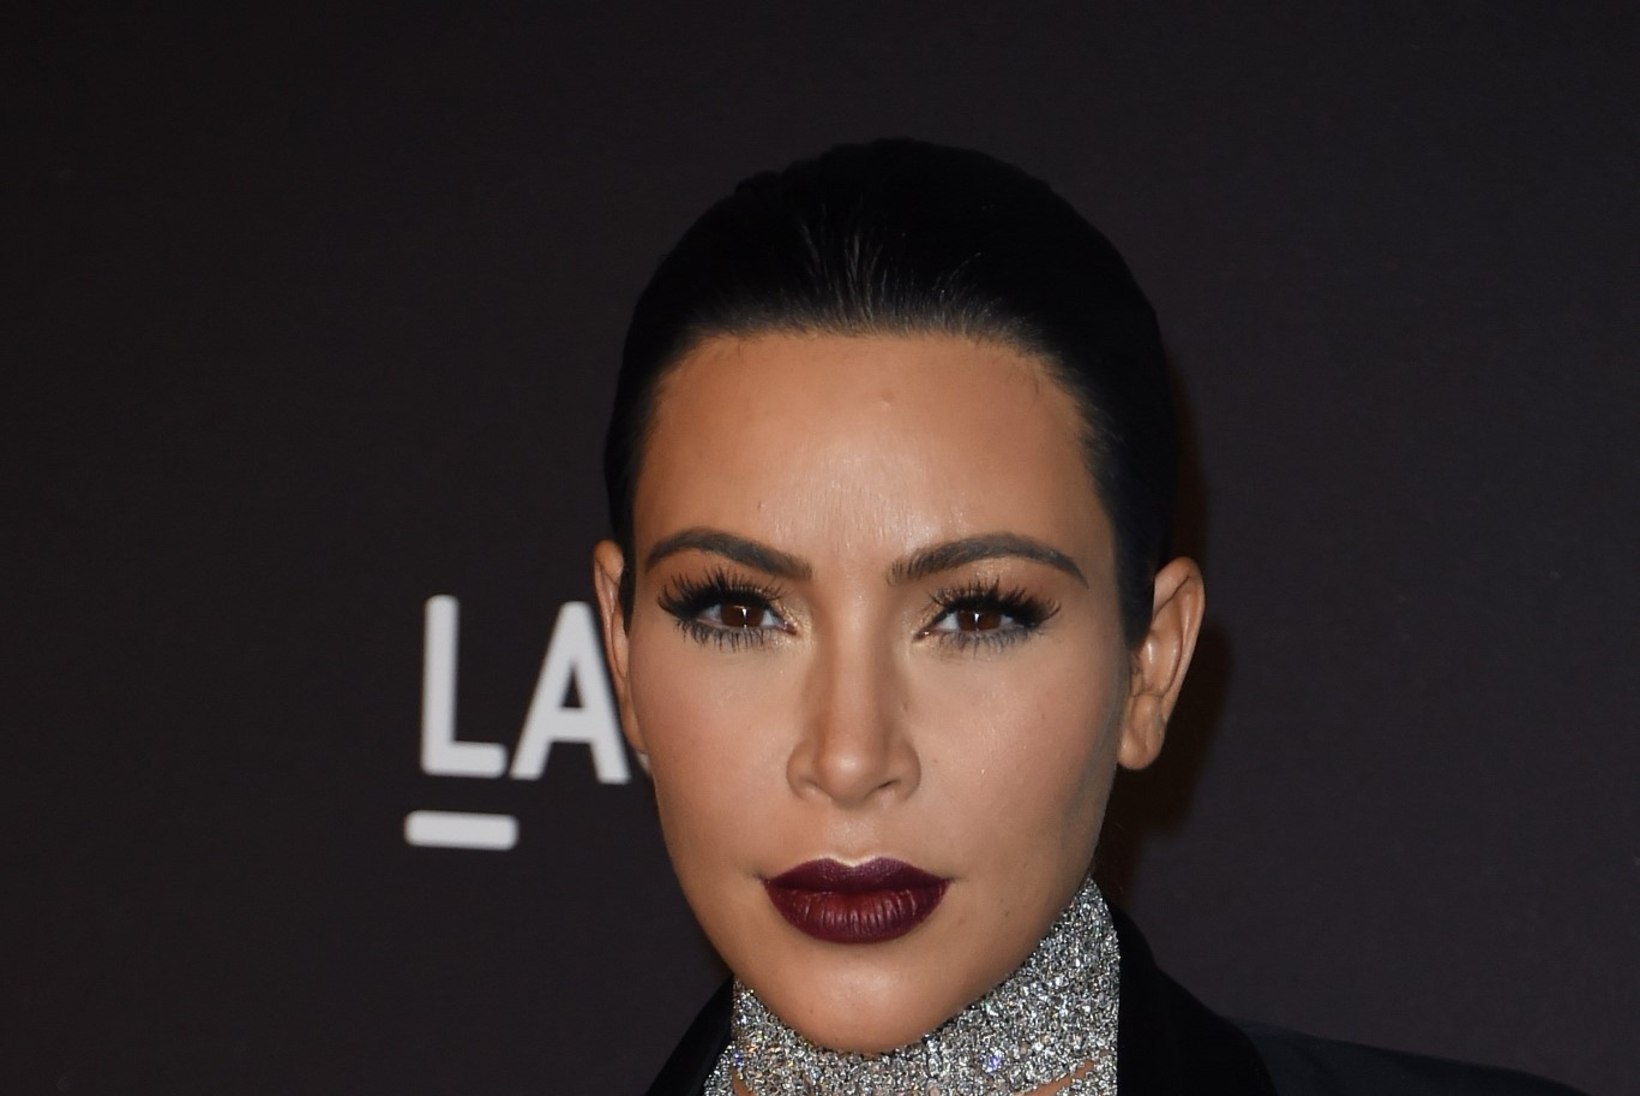 PALJASTATUD! Mis on Kim Kardashiani veatu juuksepiiri saladus?